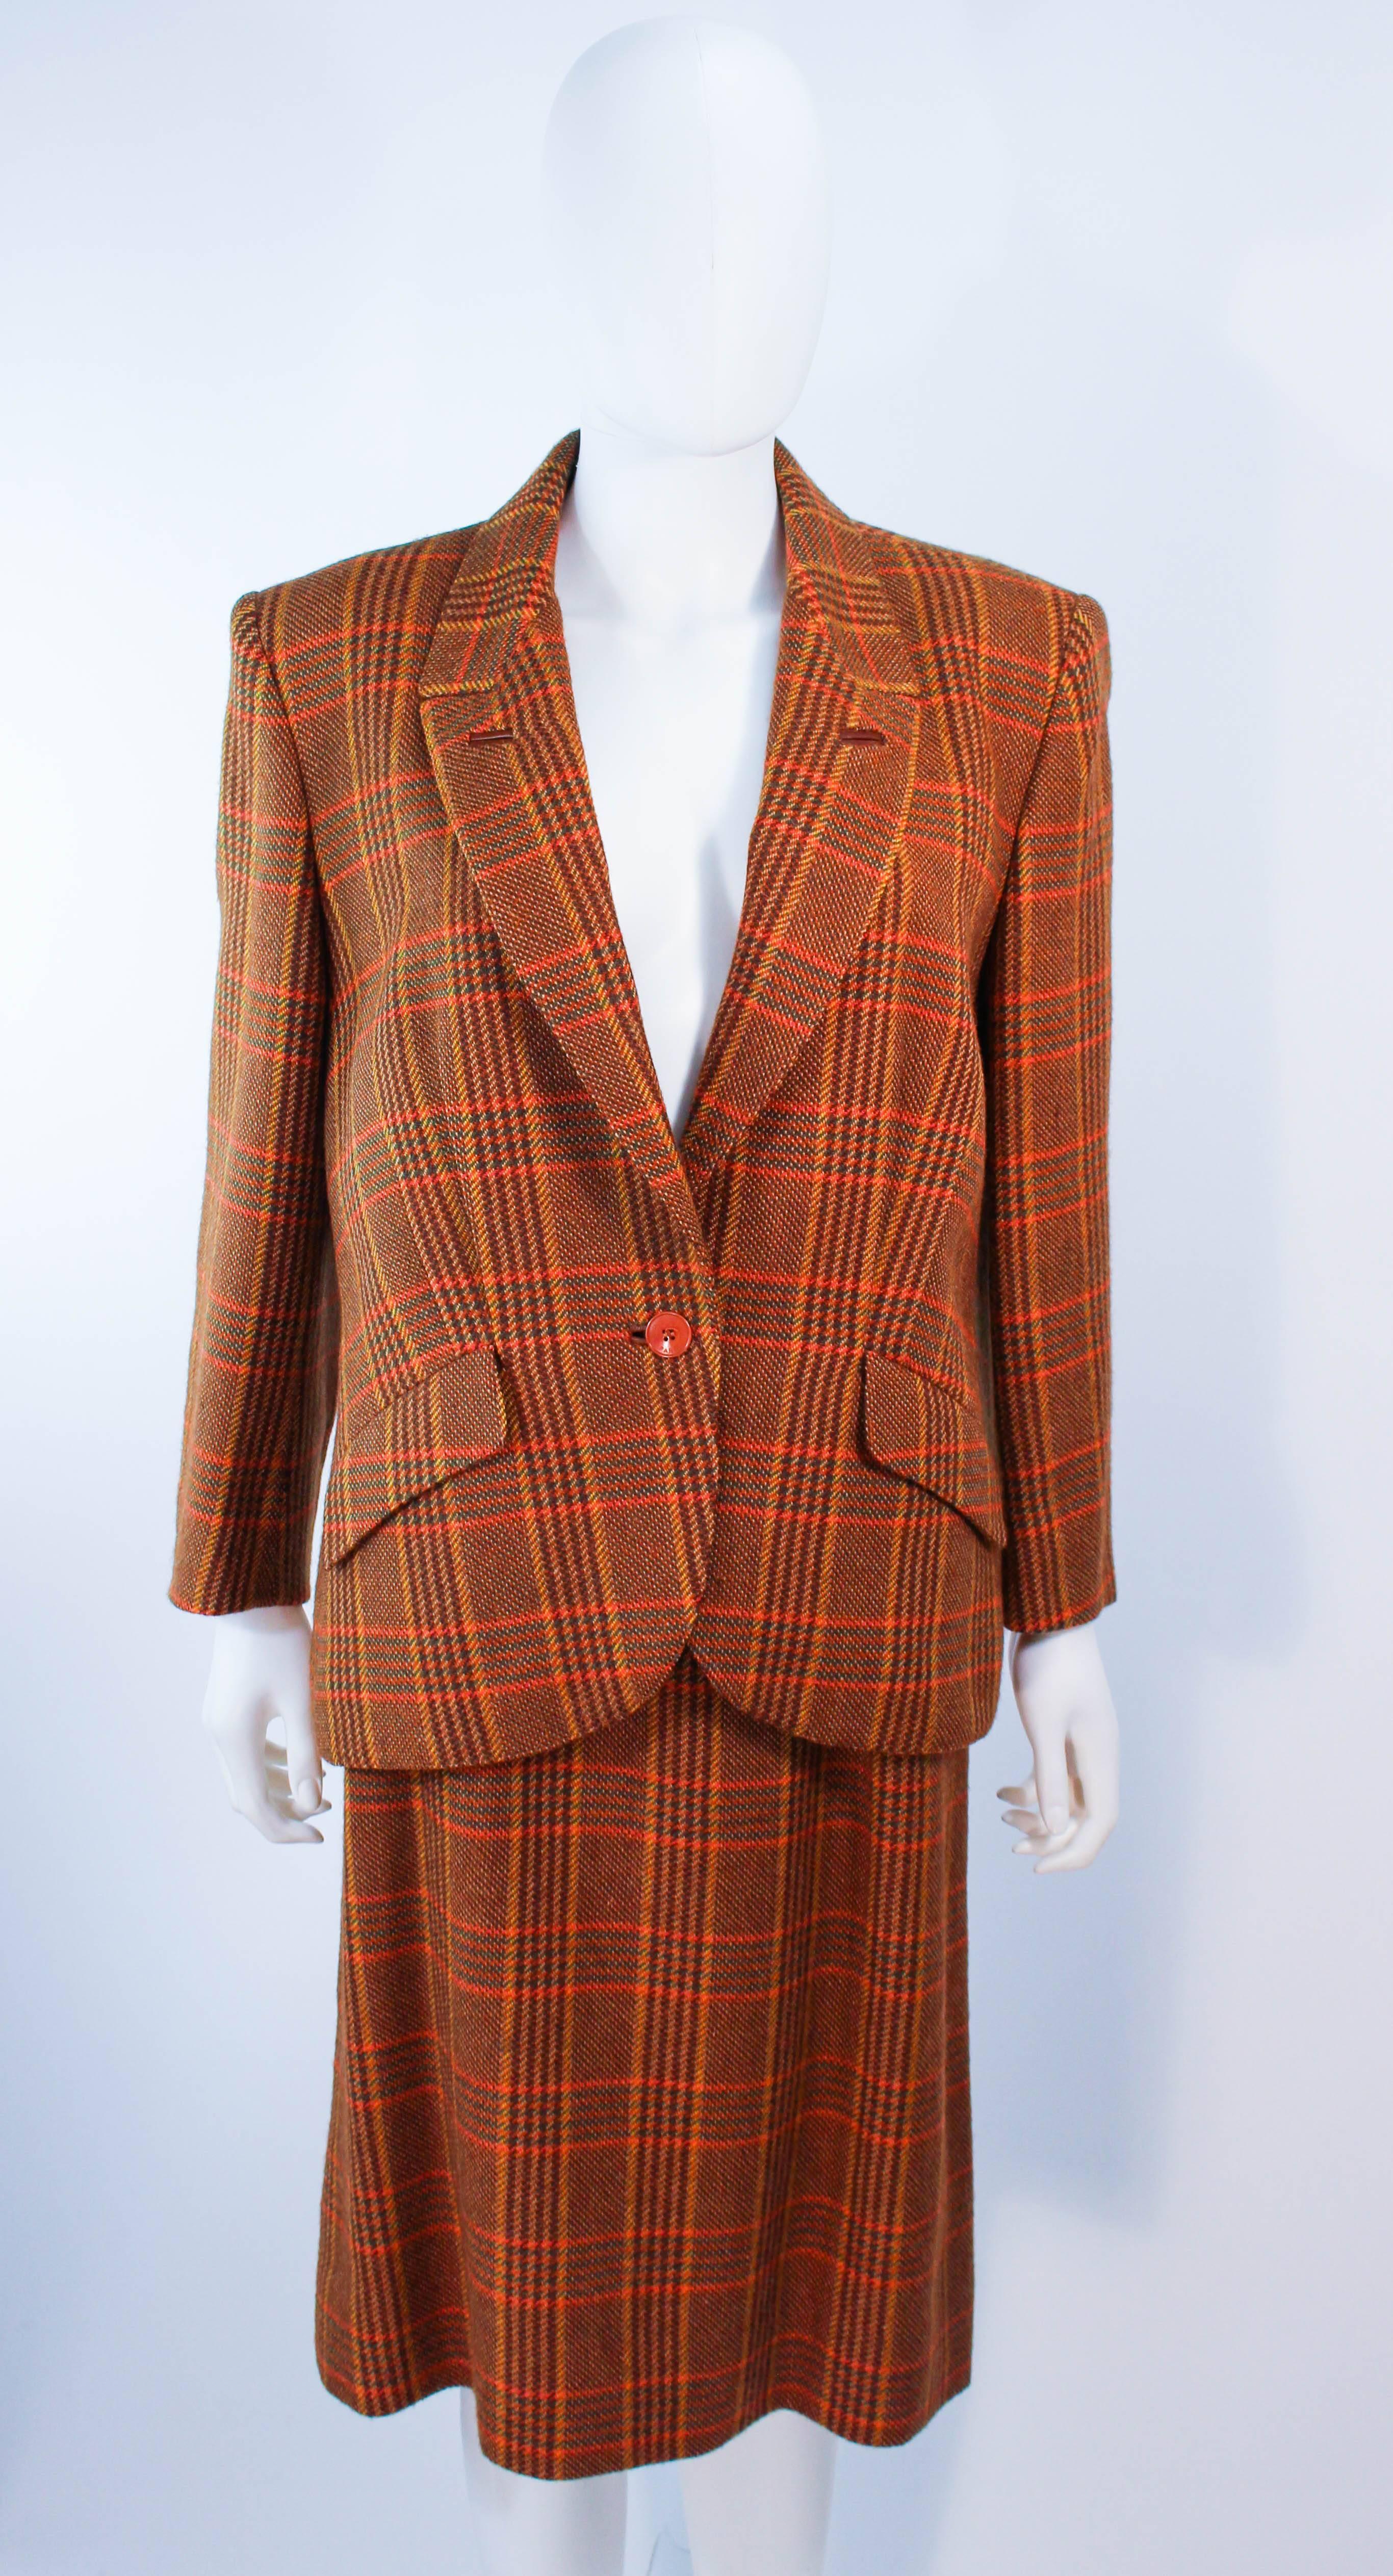 Ce tailleur jupe Hermès est composé d'une laine écossaise marron. La veste se ferme par un bouton central sur le devant. La jupe se ferme à l'aide d'une fermeture éclair. Vintage, en excellent état.

**Veuillez comparer les mesures pour vous assurer